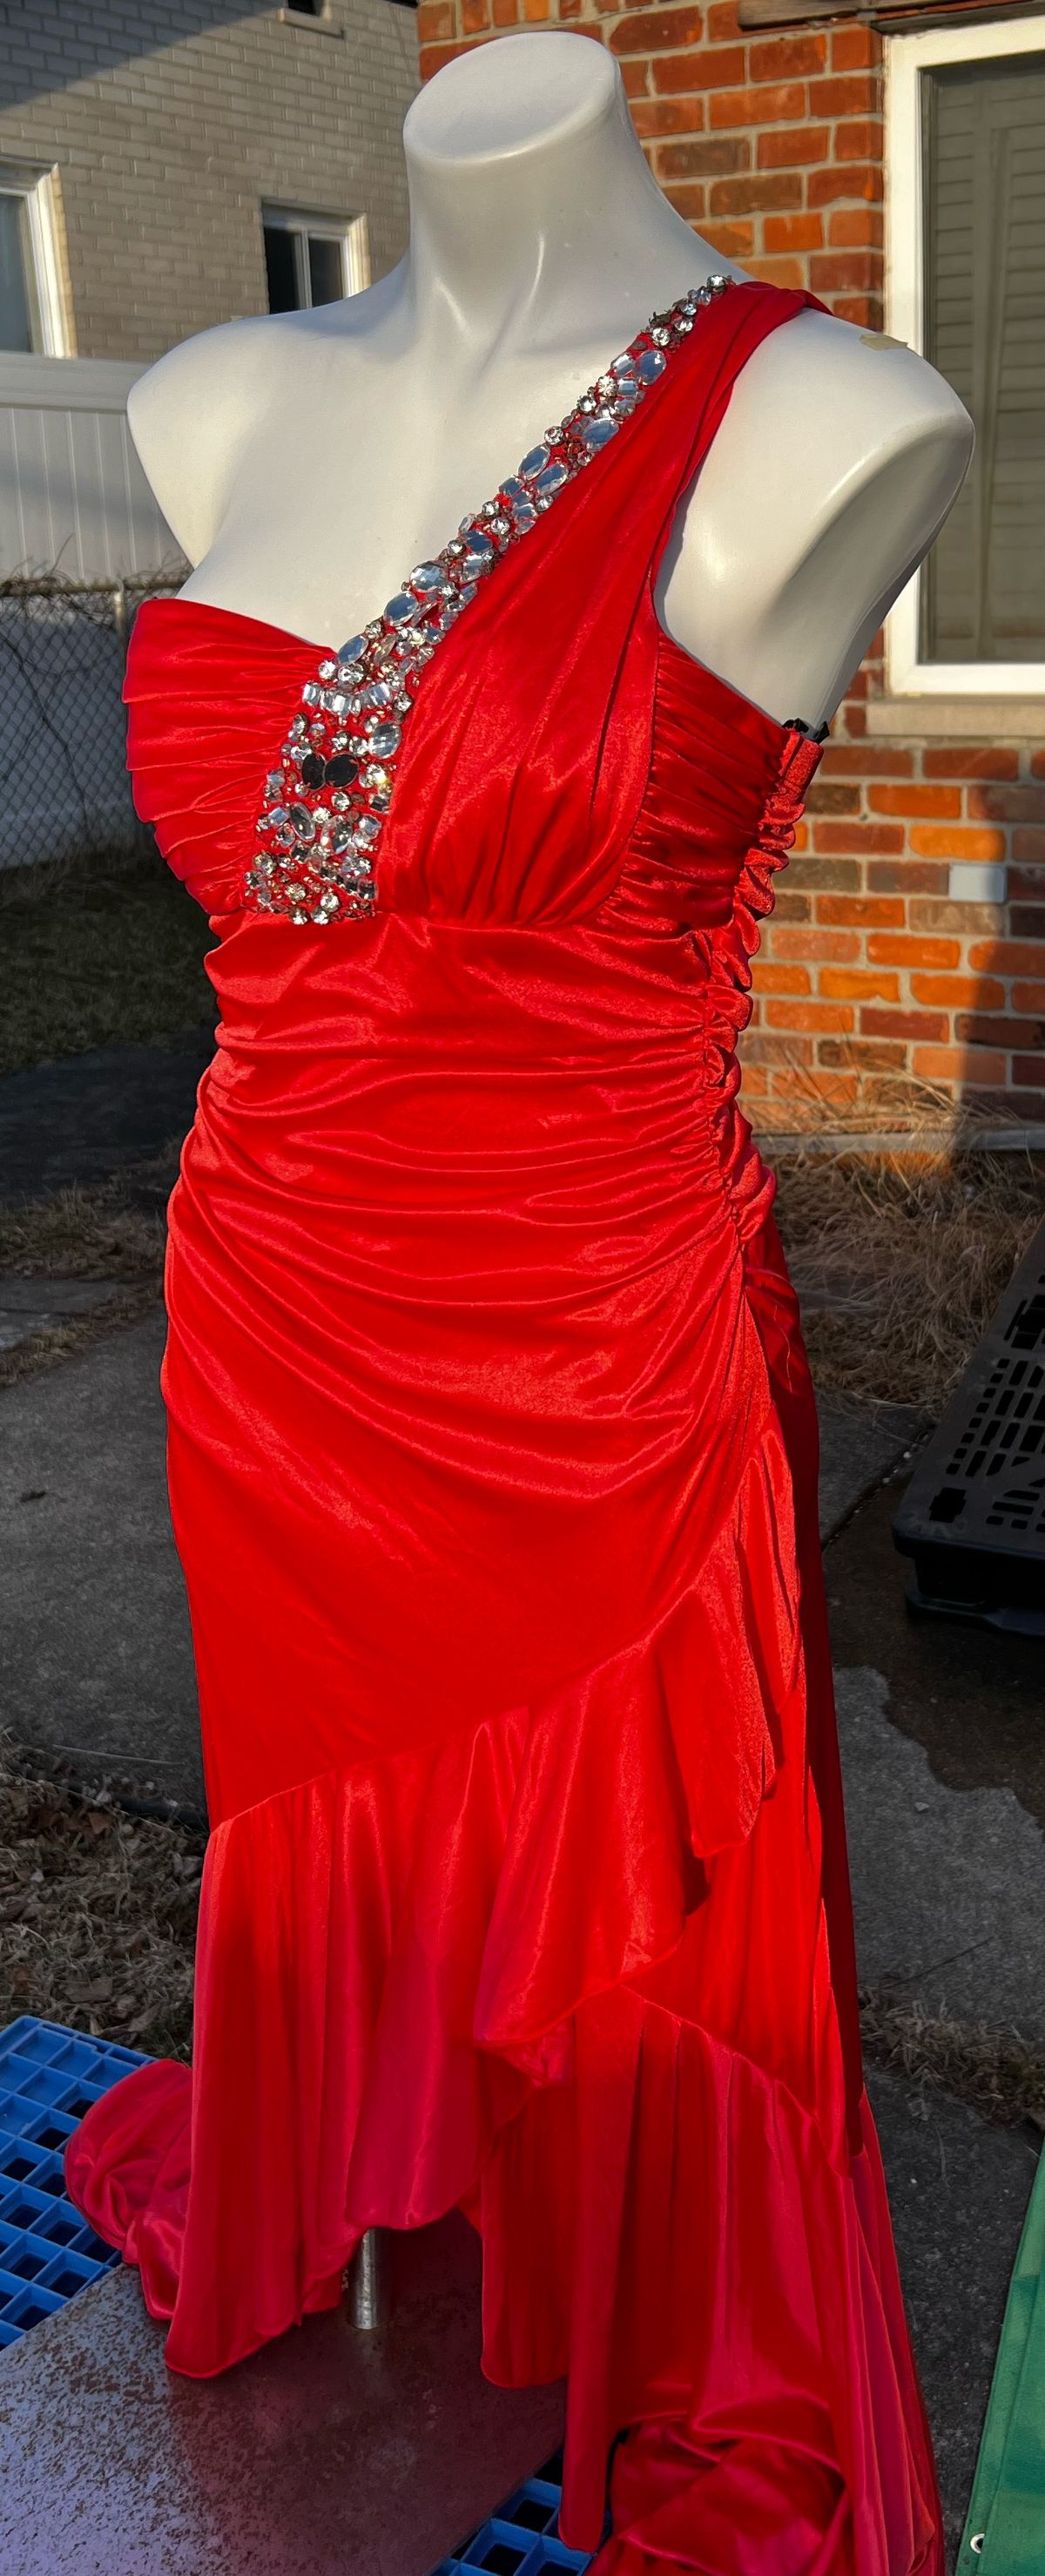 Size L Prom One Shoulder Coral Side Slit Dress on Queenly